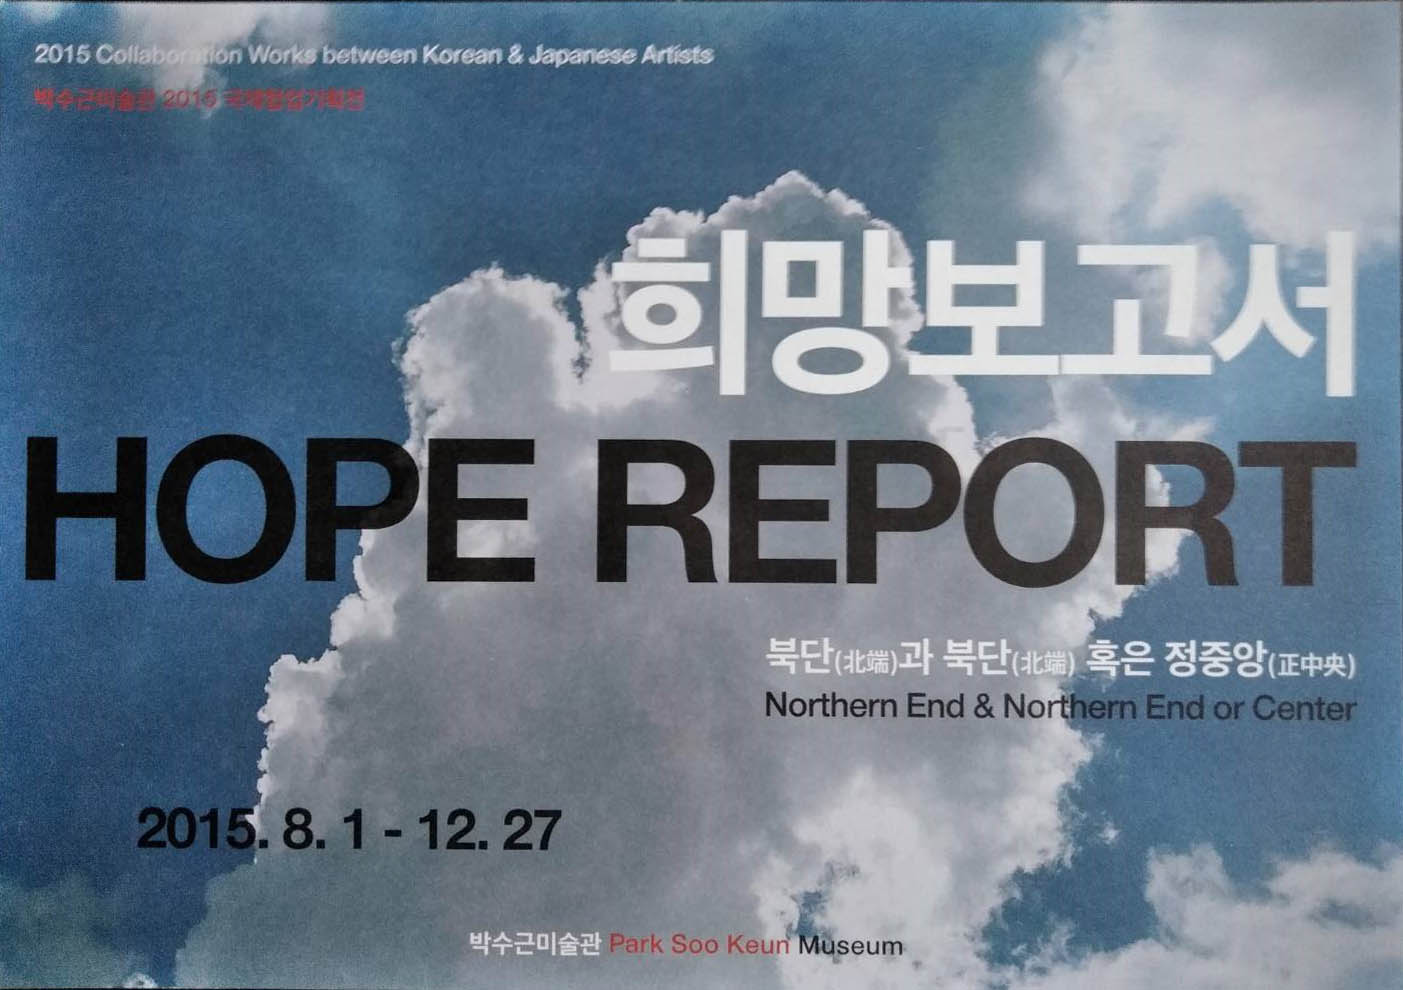 HOPE REPORT-記憶する足形 foot-shapes that evoke memories in 2015 at Korea